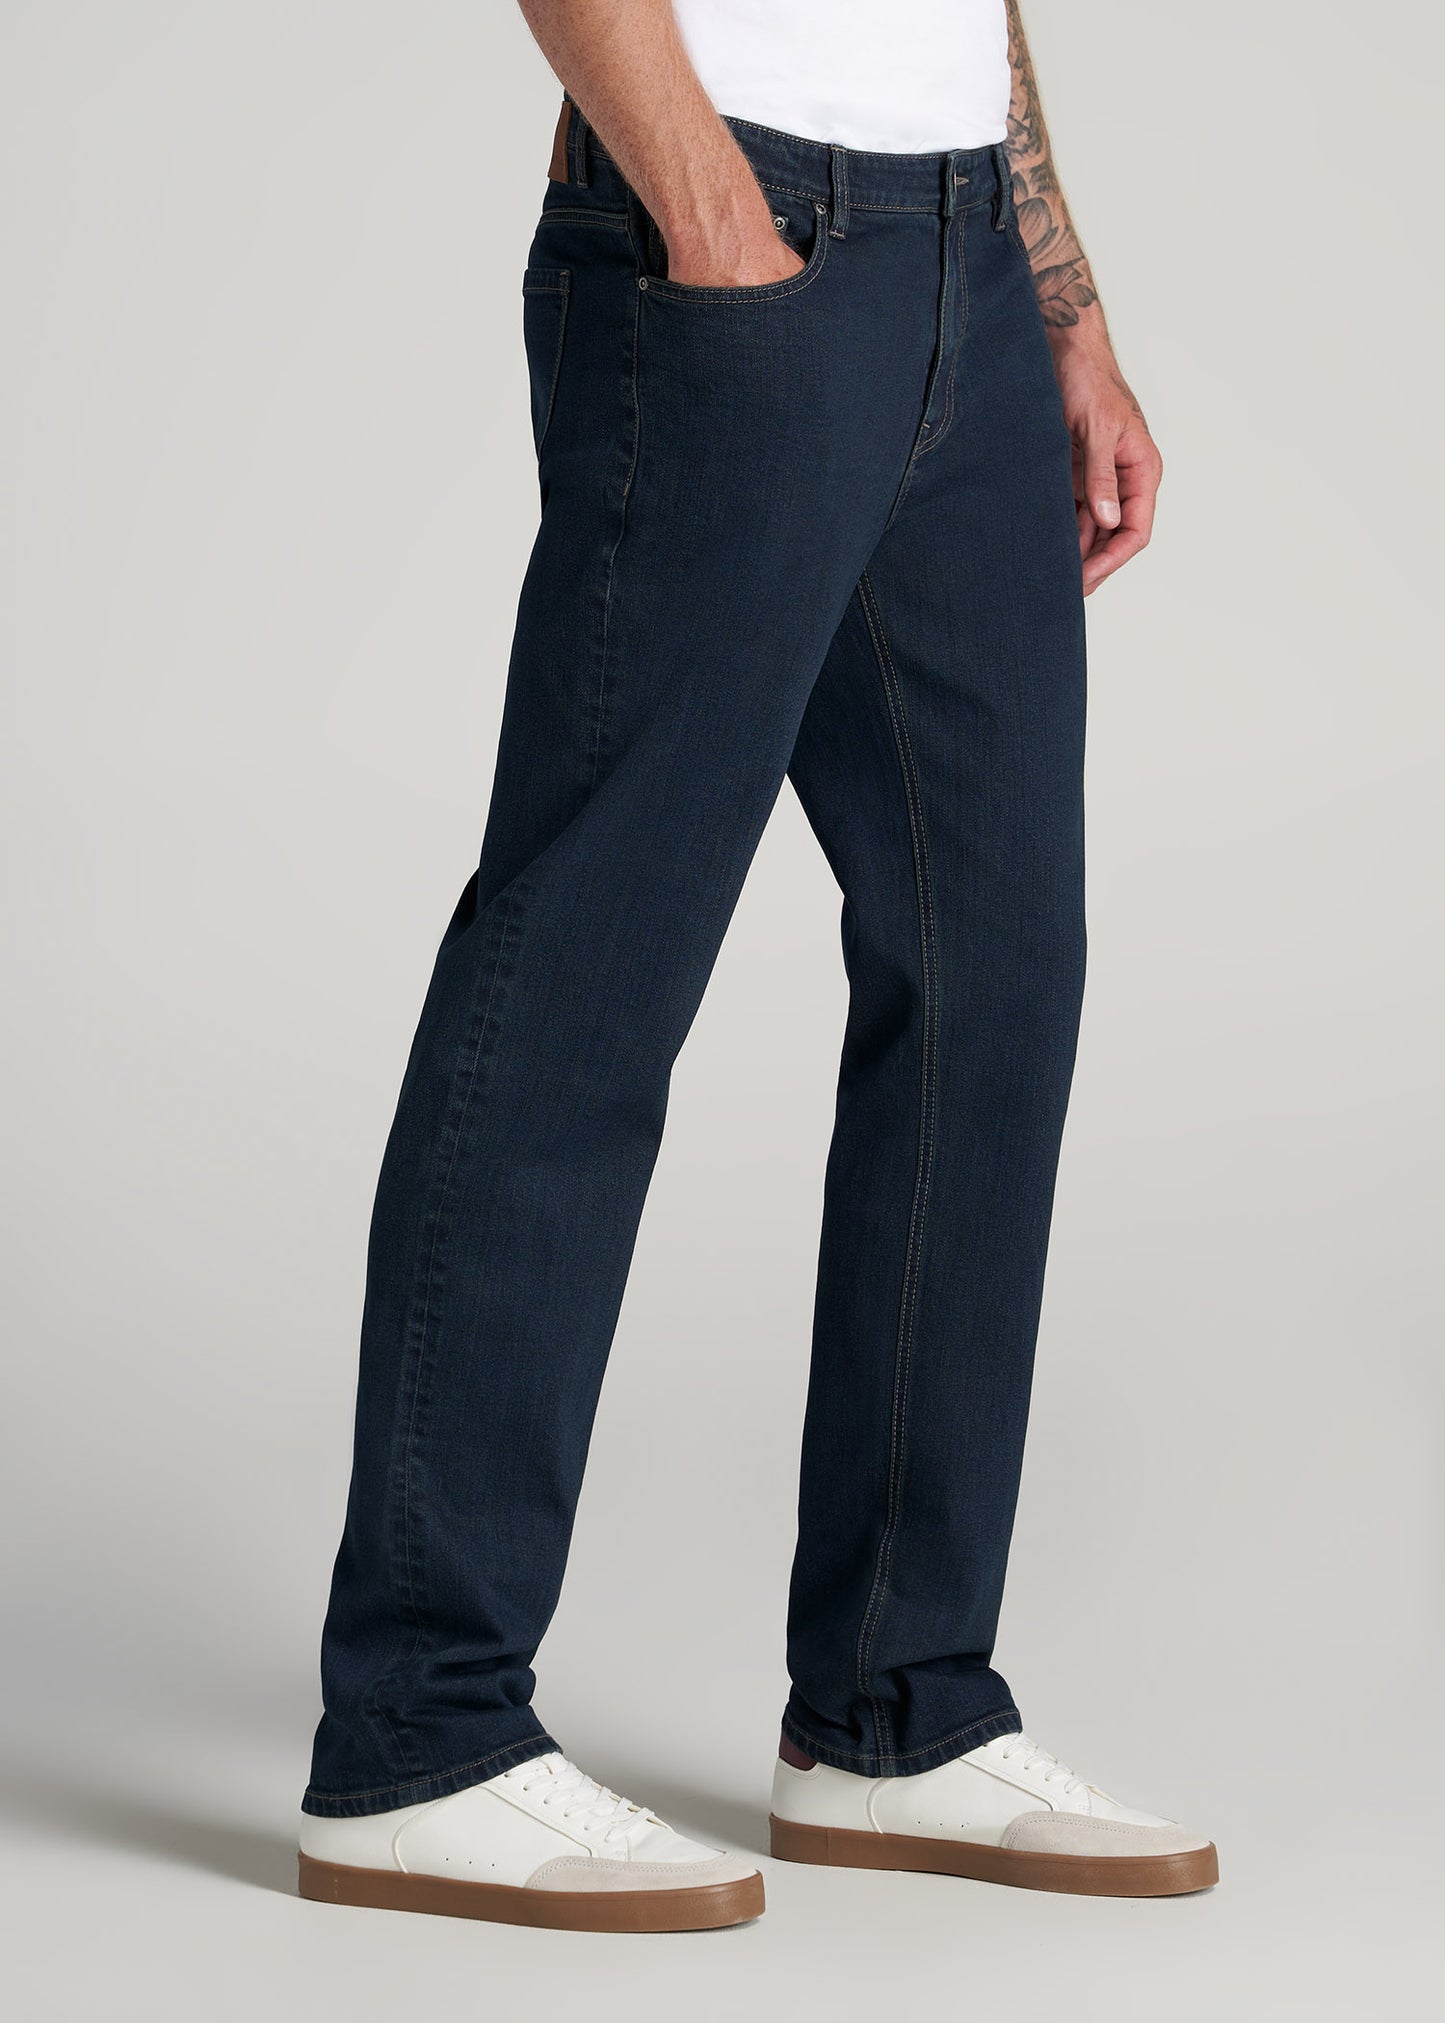    American-Tall-Men-J1-Jeans-Deep-Blue-Rinse-side